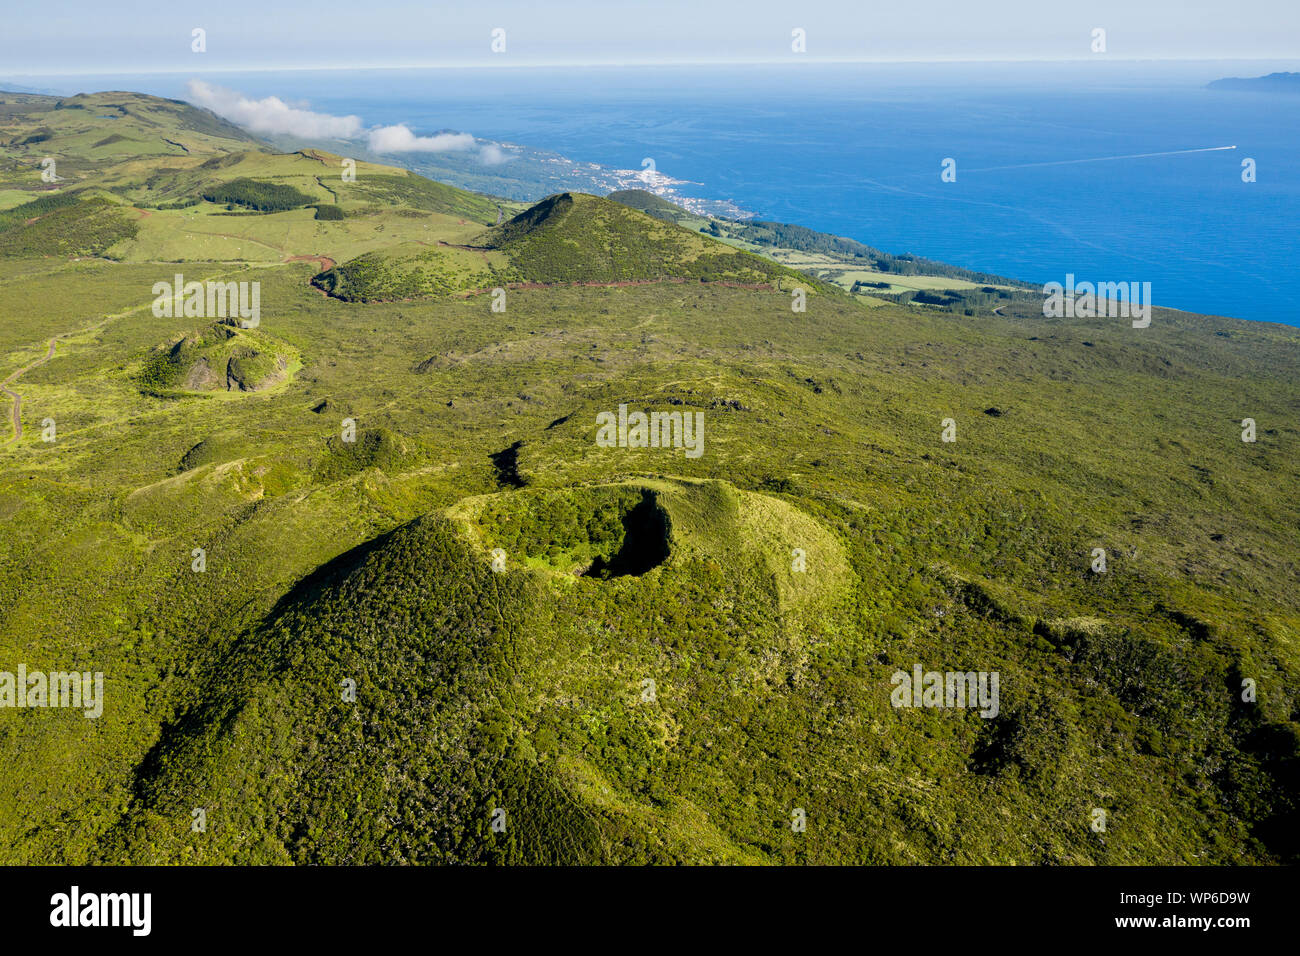 Imagen aérea del cráter de la caldera volcánica verde típico paisaje con conos de volcán de Planalto da Achada meseta central de Ilha do Pico Island, Azore Foto de stock